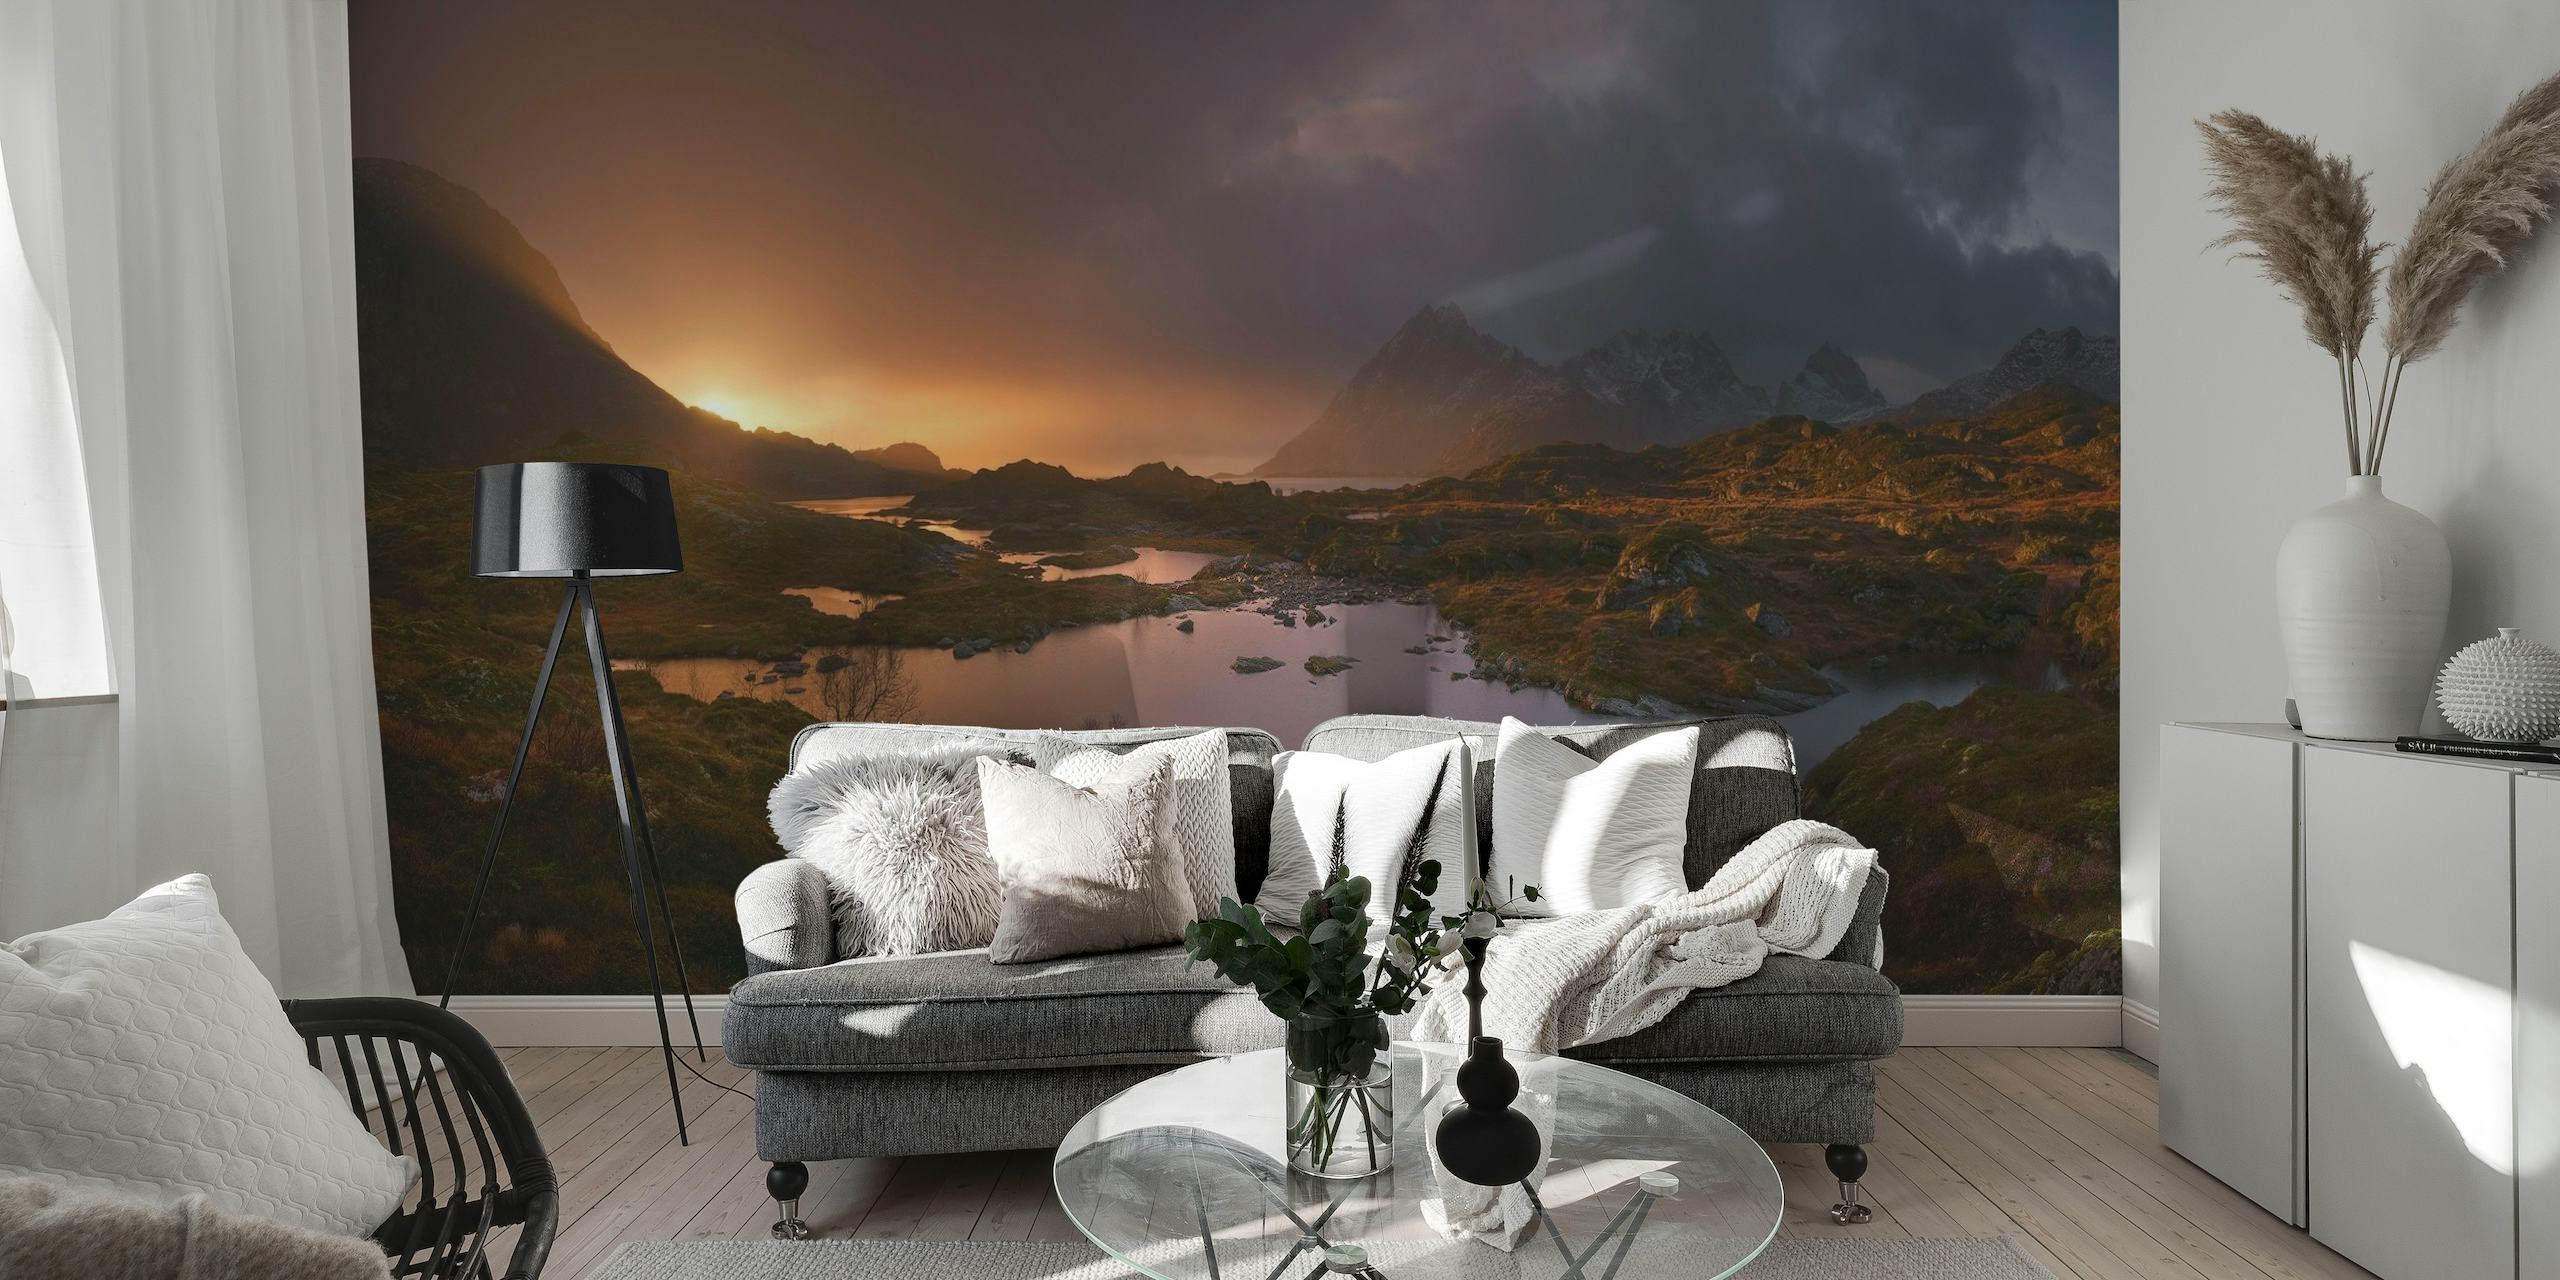 Fotomurale Alba sulle Lofoten raffigurante la tranquilla luce dell'alba sul paesaggio norvegese con montagne e laghi.